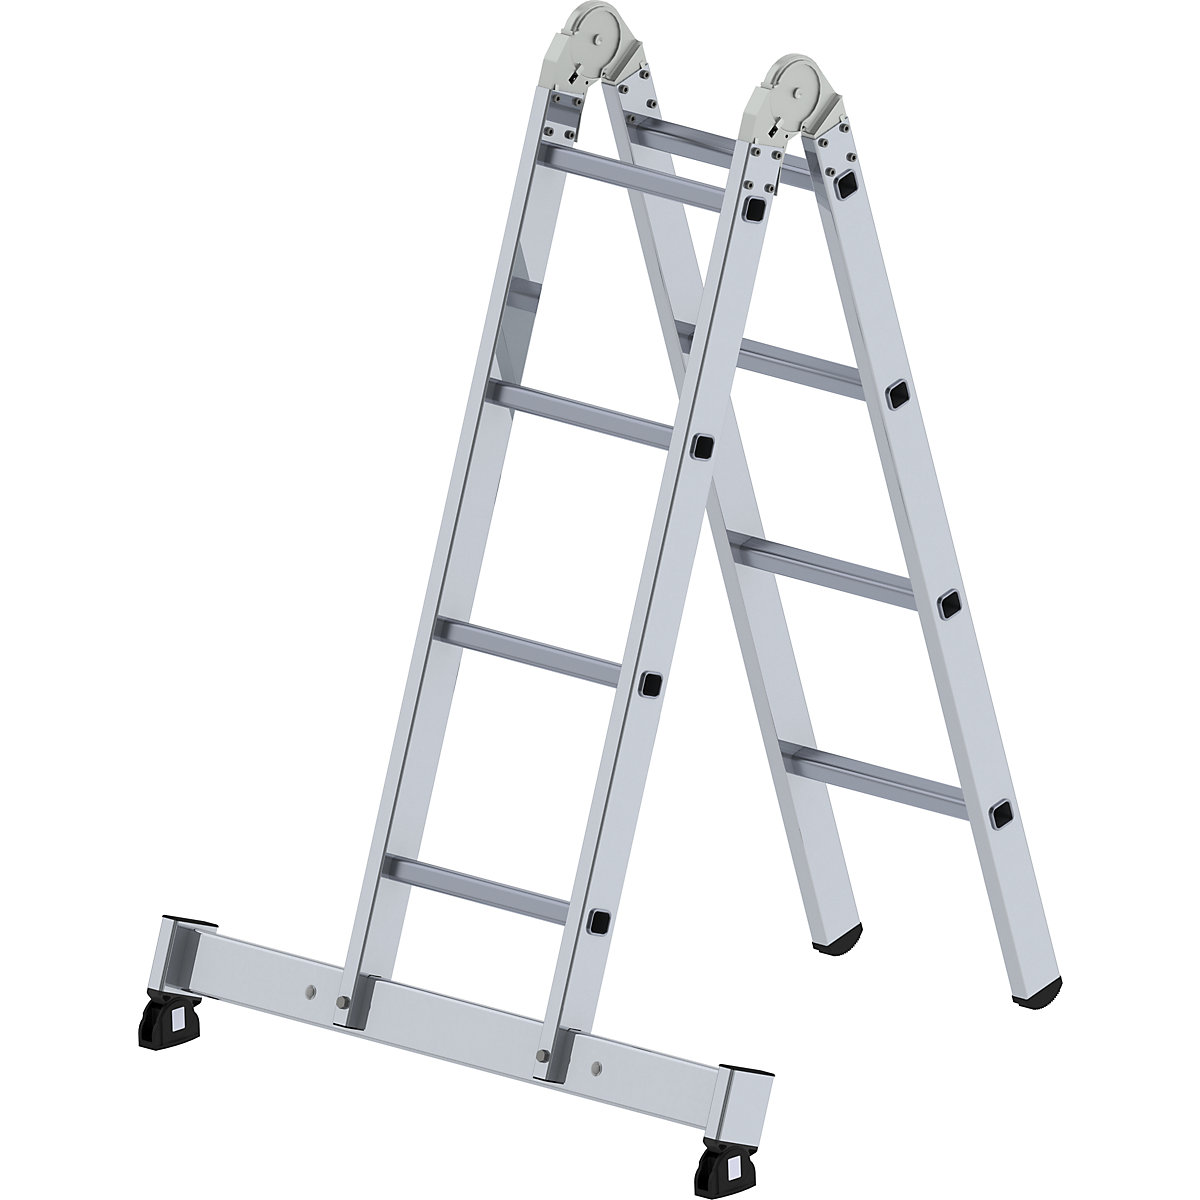 Aluminium folding ladder - MUNK